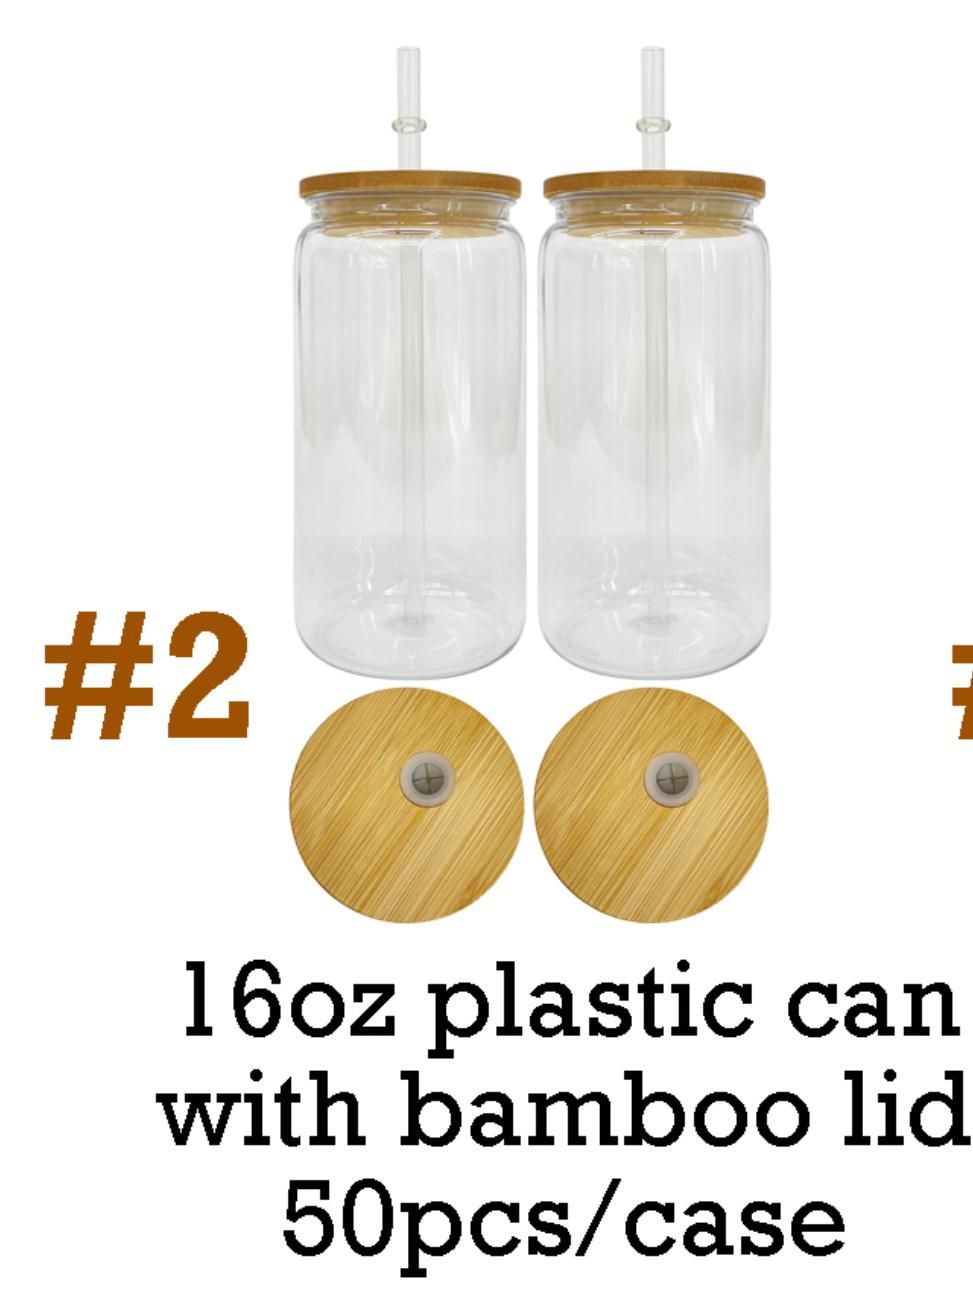 z pokrywkami bambusowymi (50pcs/case)